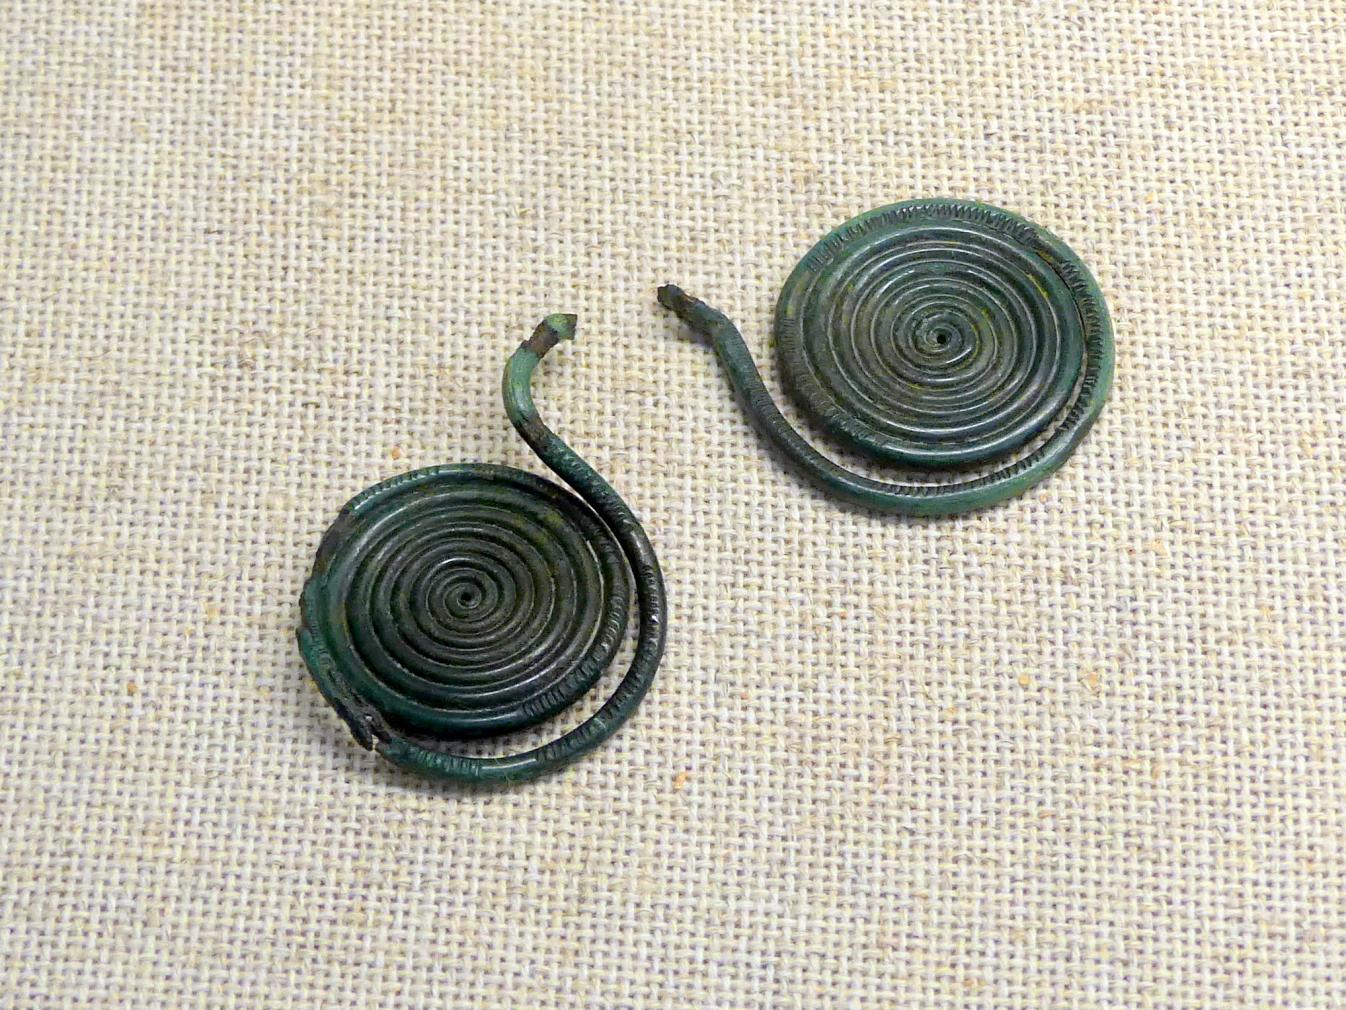 Brillenspiralen, Späte (Jüngere) Bronzezeit, 1500 - 700 v. Chr., Bild 2/2